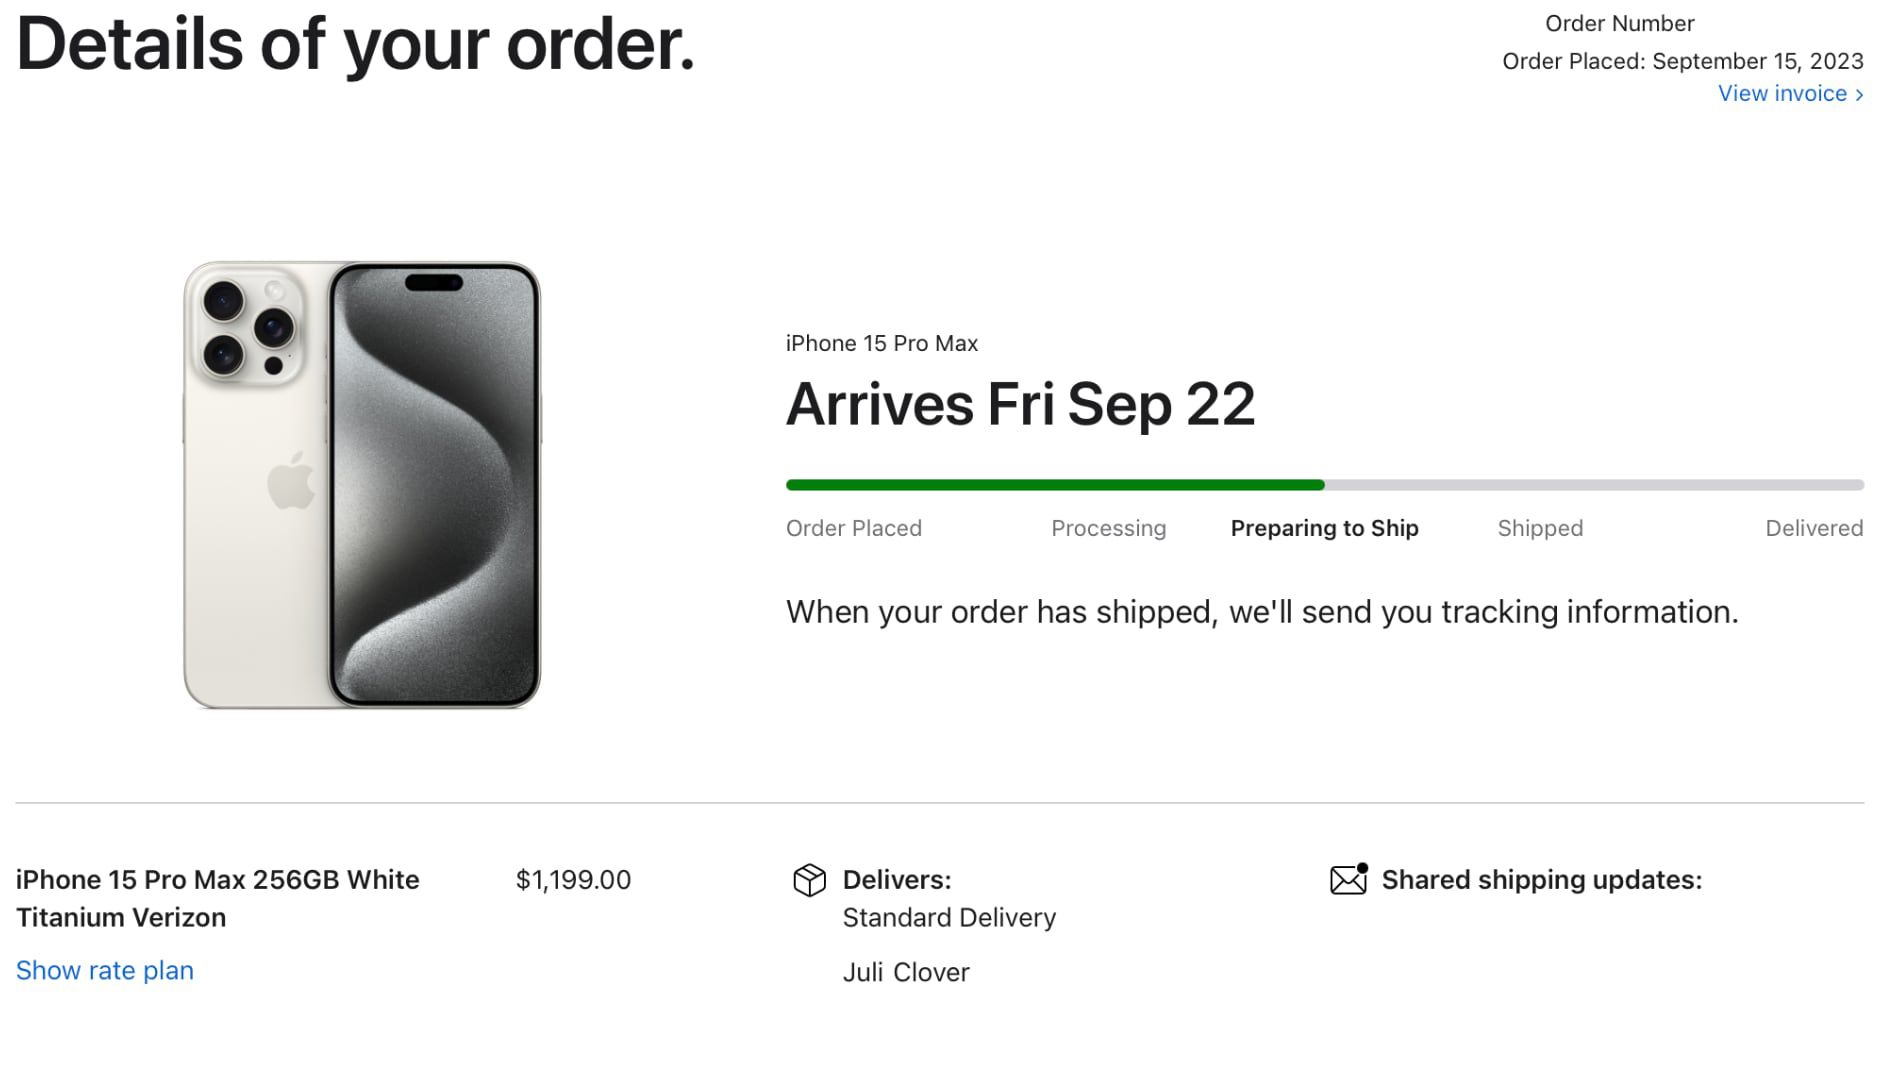 Algumas pré-encomendas do iPhone 15 e iPhone 15 Pro agora estão ‘preparadas para envio’ antes do lançamento em 22 de setembro